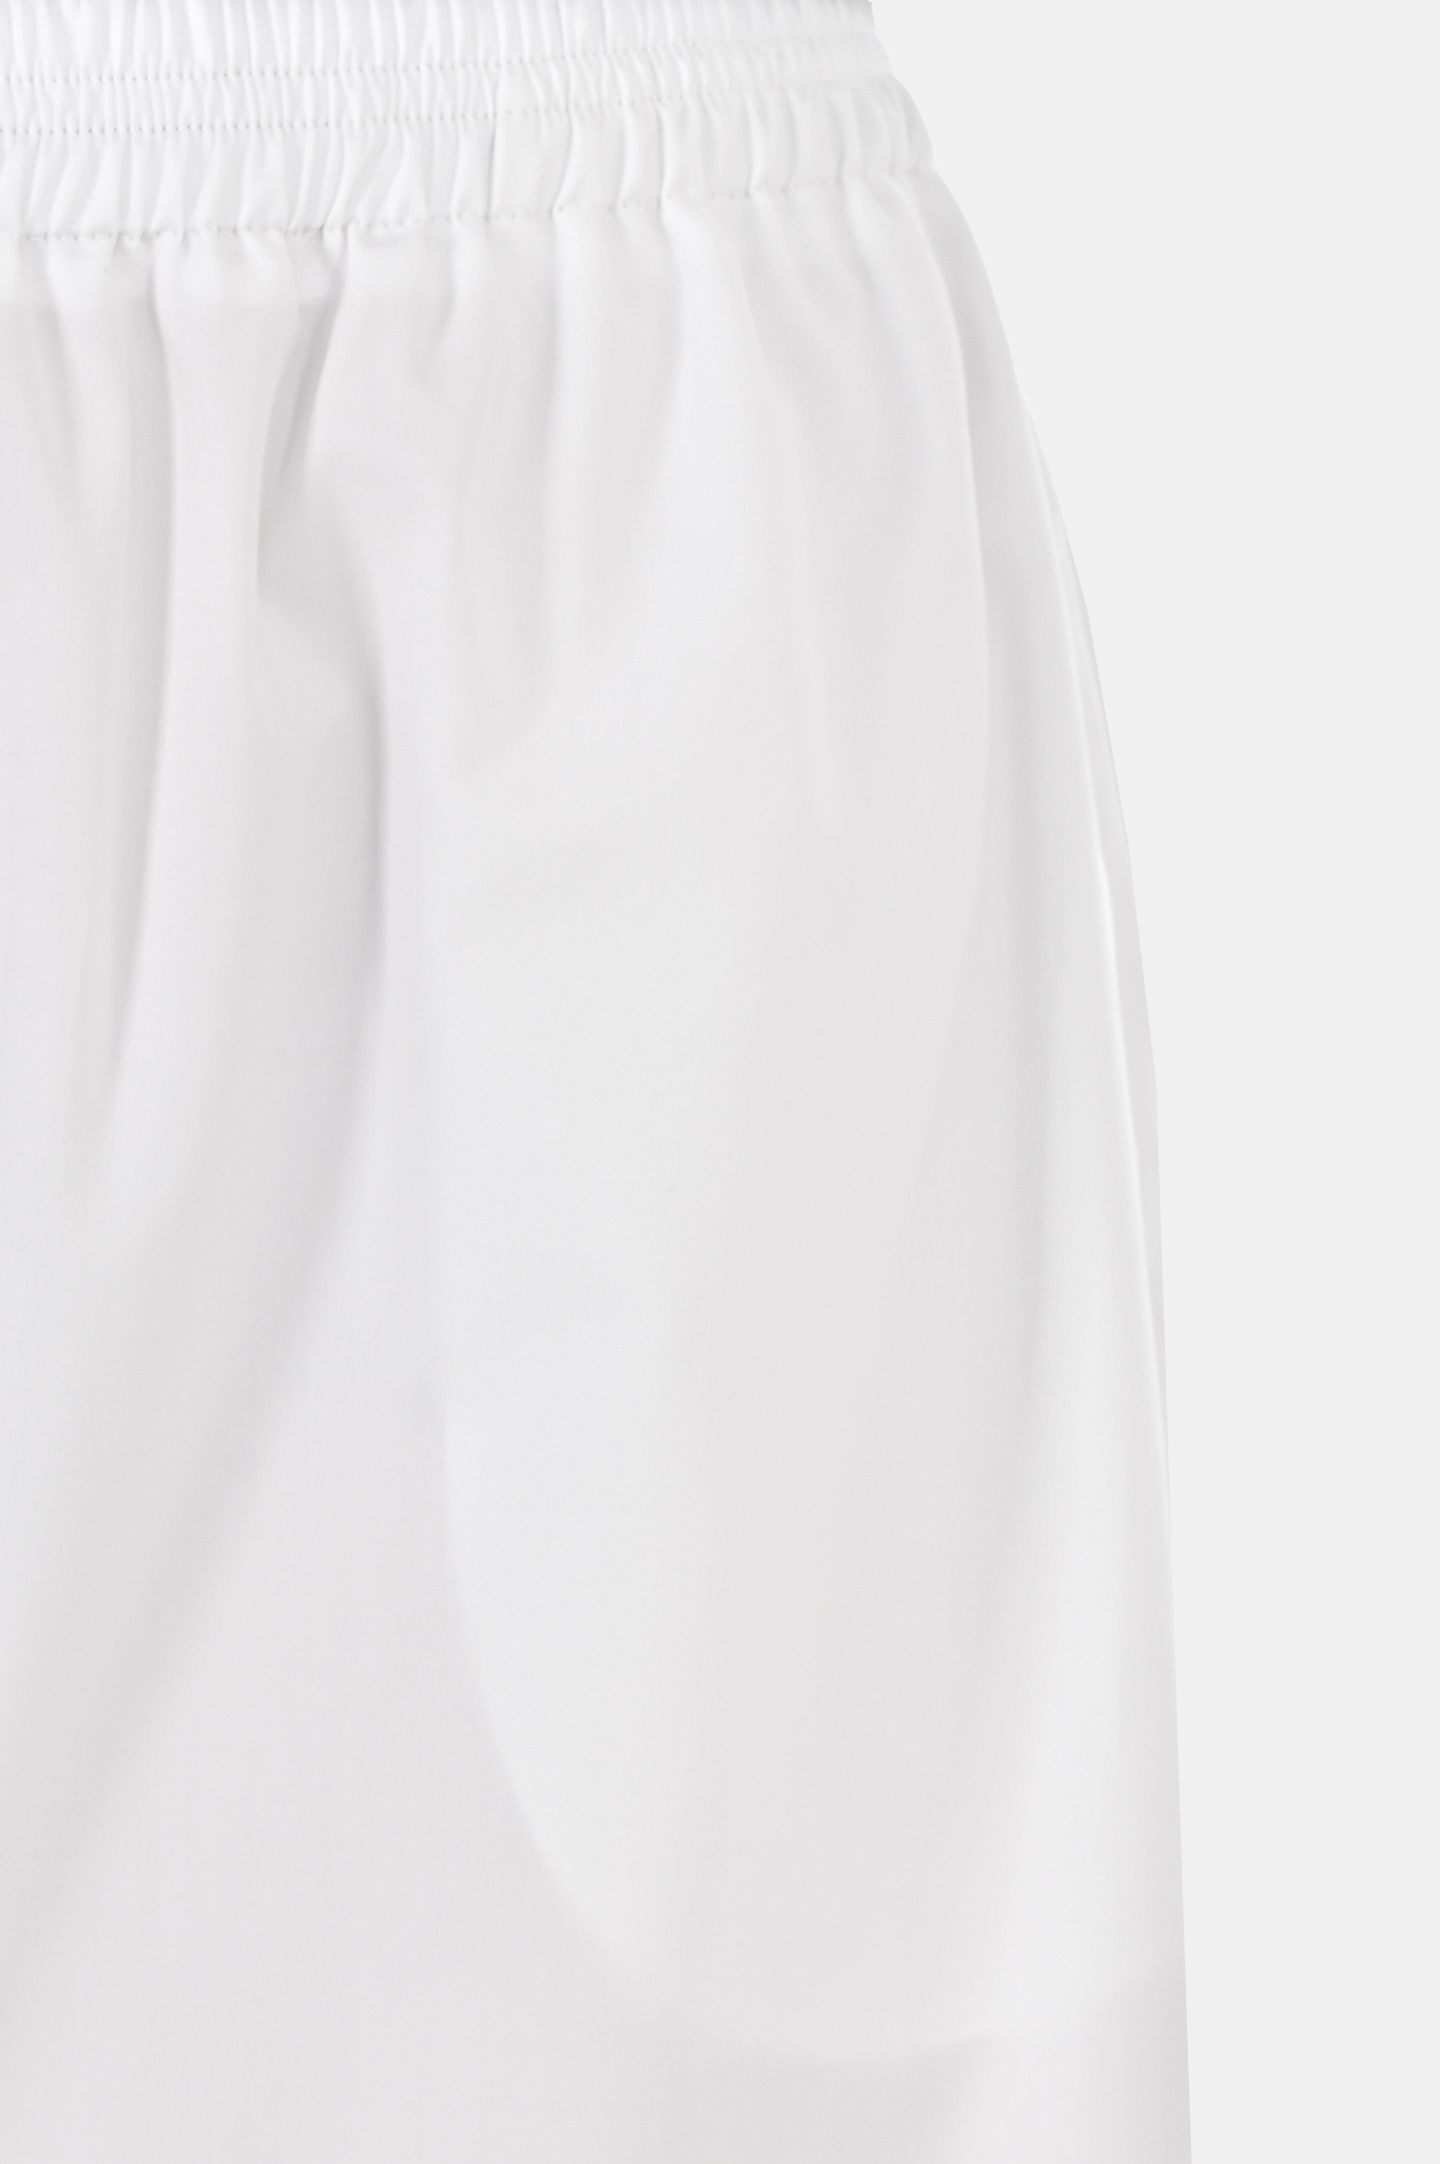 Хлопковые шорты-бермуды FABIANA FILIPPI PAD274F576D614, цвет: Белый, Женский